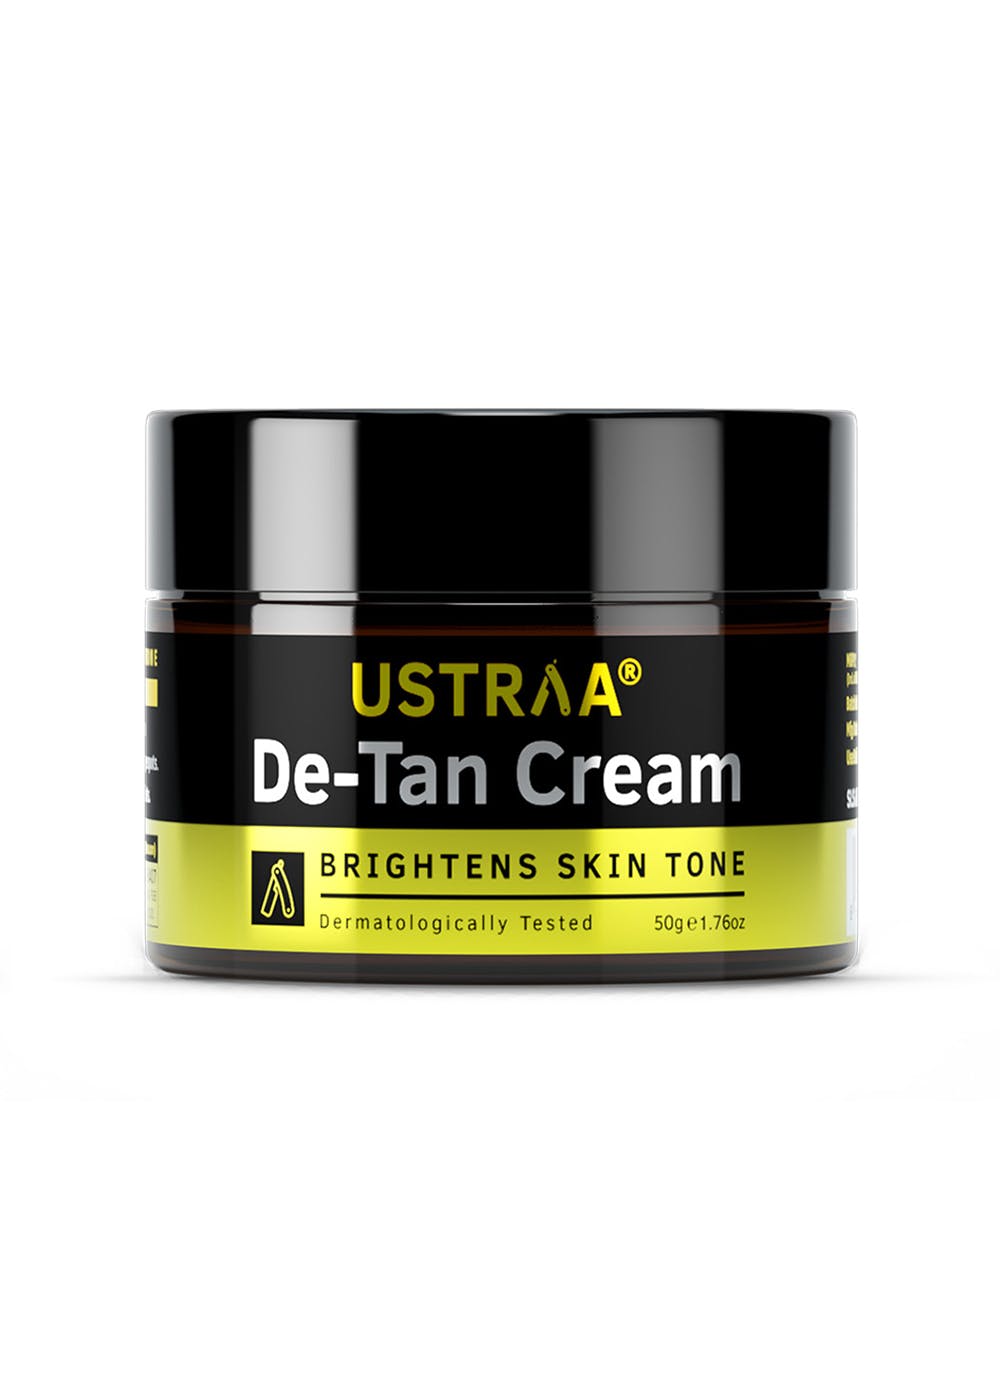 De-Tan Face Cream - 50gm